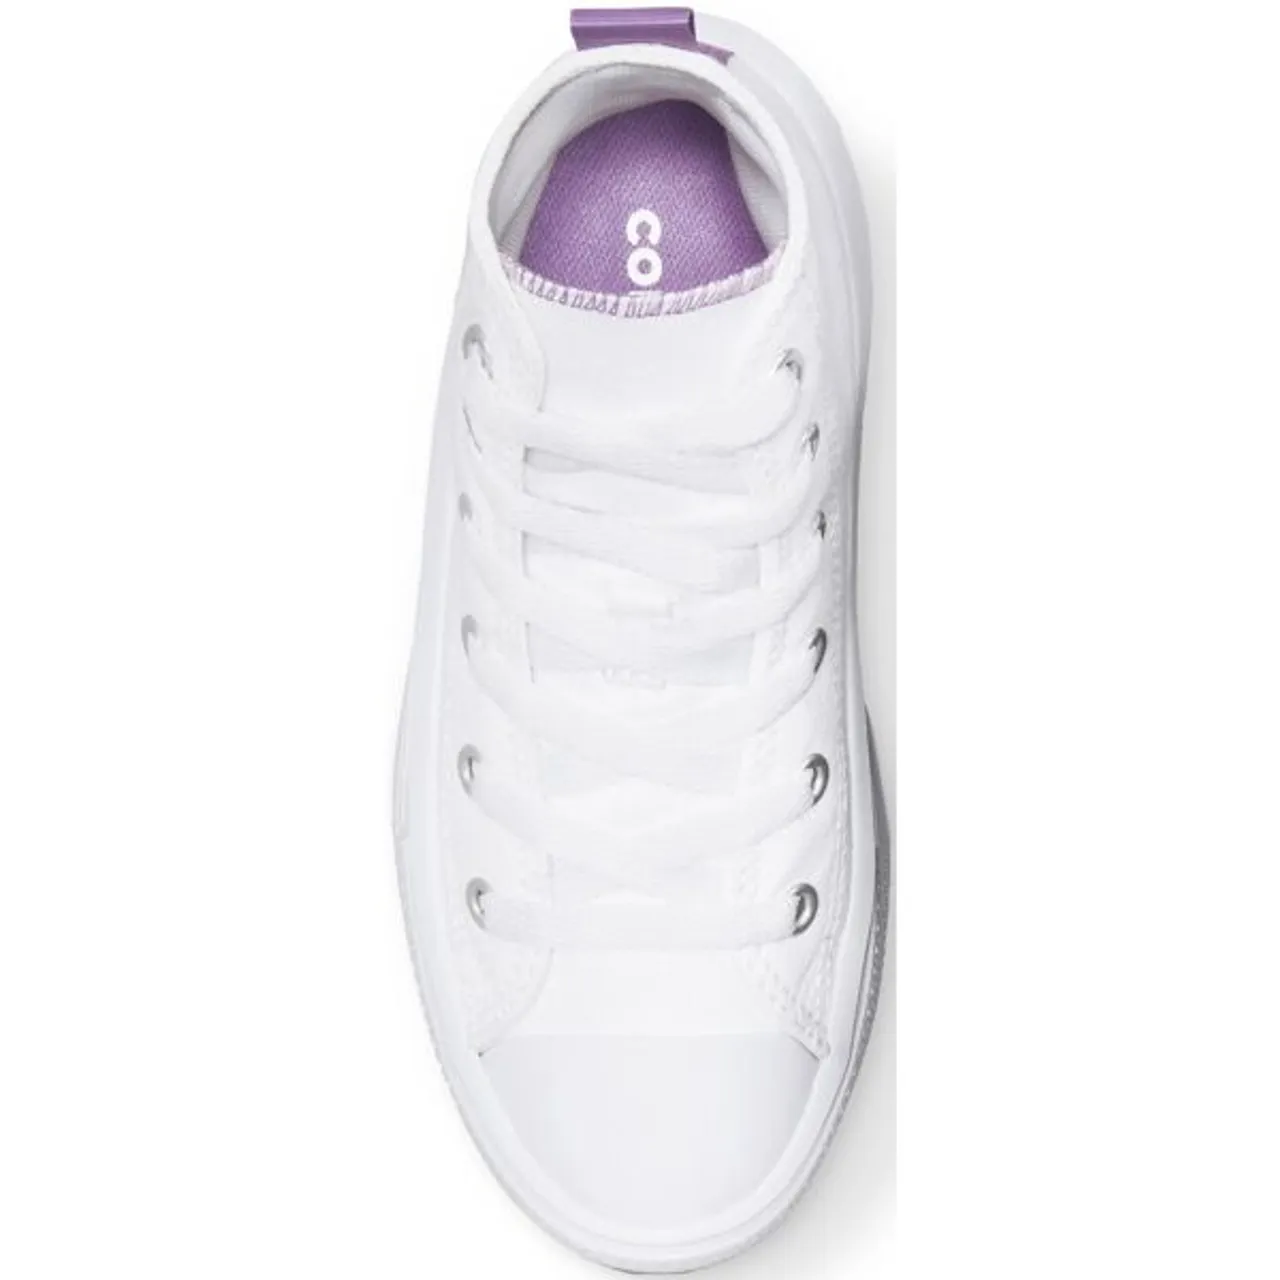 Sneaker CONVERSE "CHUCK TAYLOR ALL STAR MOVE PLATFORM" Gr. 32, weiß (white) Schuhe Sneaker